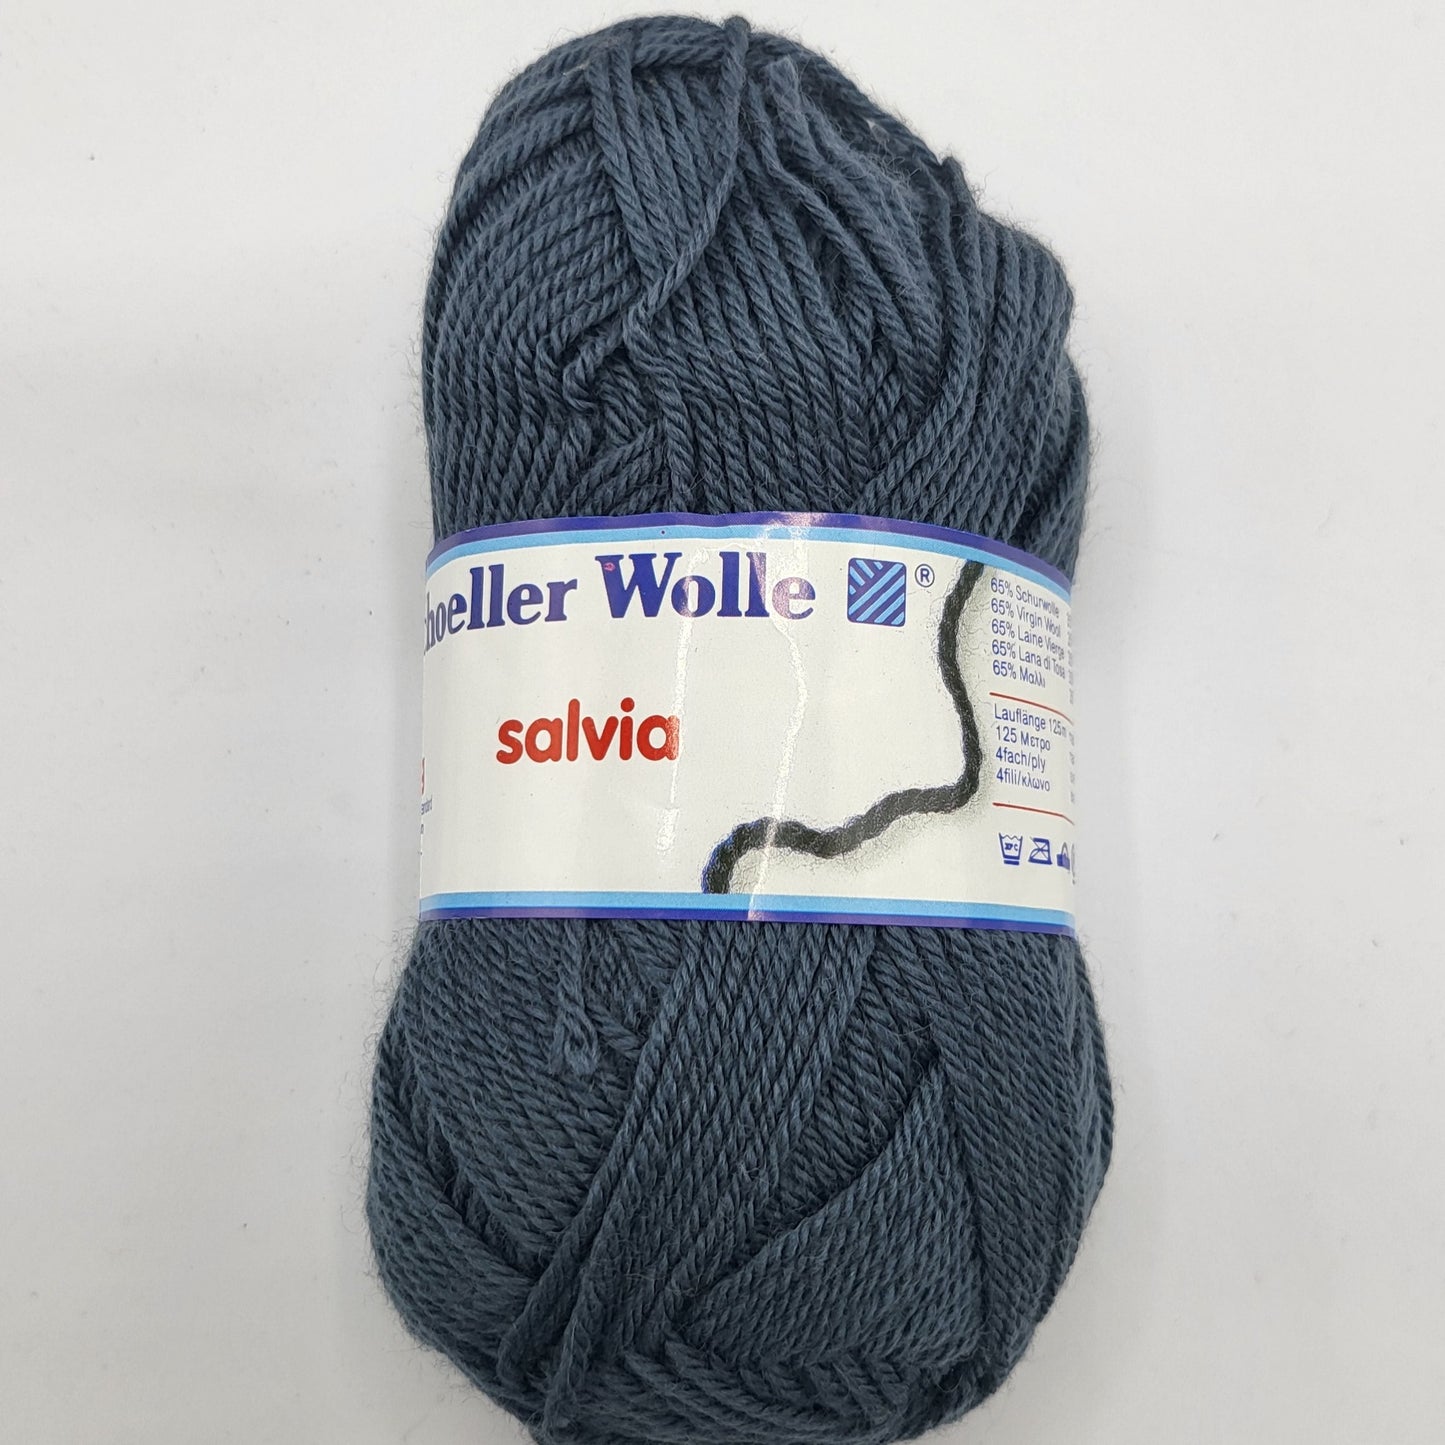 Schoeller Wolle Salvia 50g 65% aus Schurwolle natürliche Wärme und Weichheit